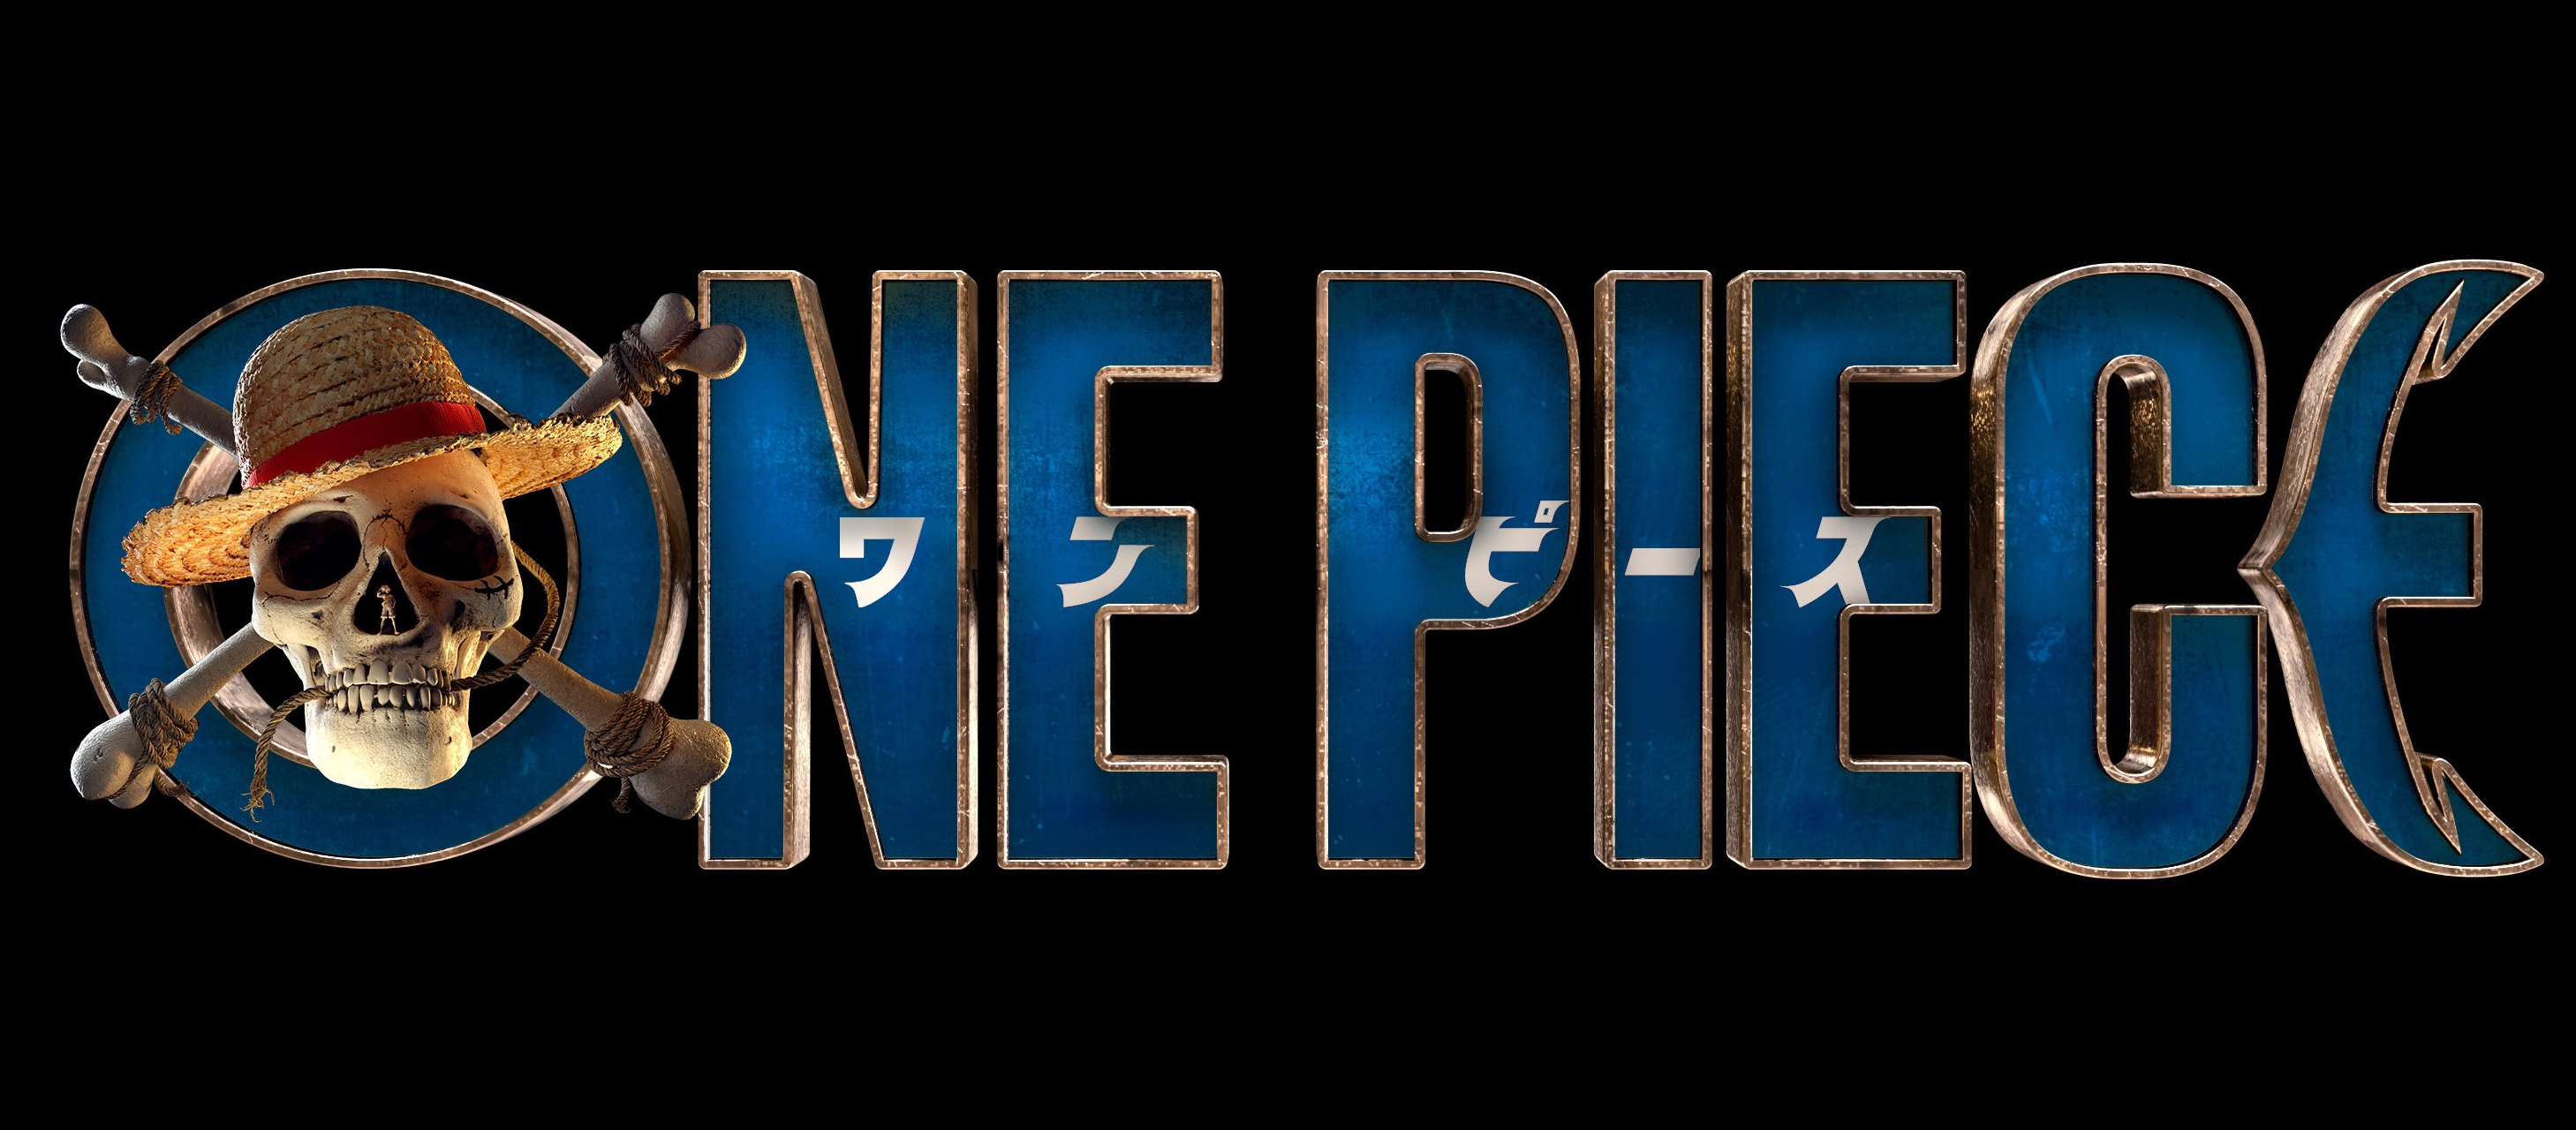 One Piece Live Action Series One Piece Wiki Fandom